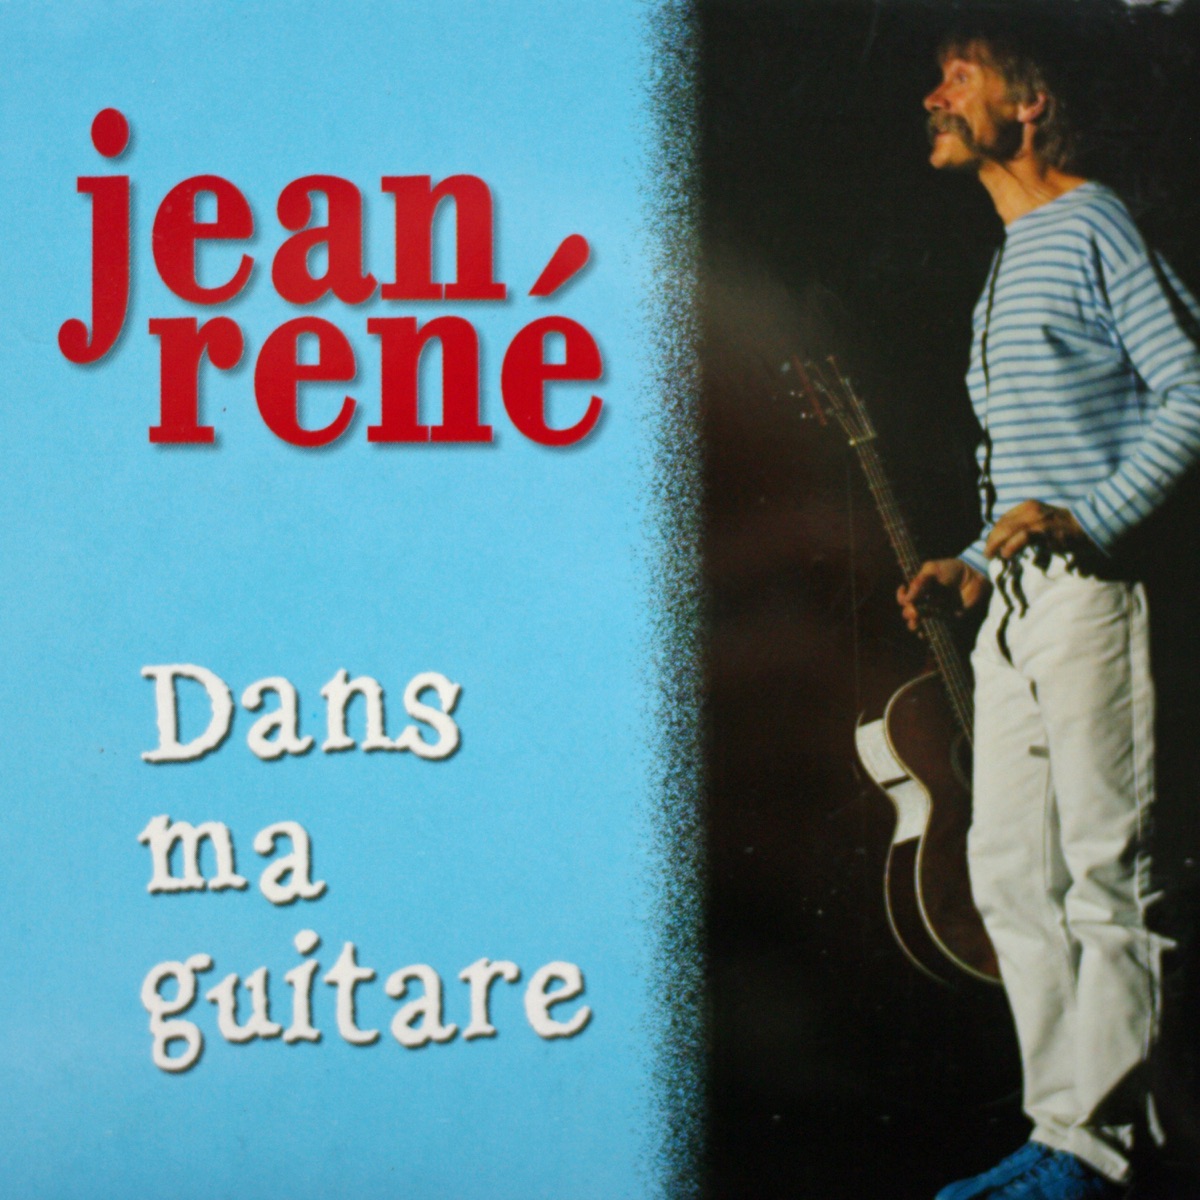 Dans ma guitare (En concert) – Album par Jean René – Apple Music